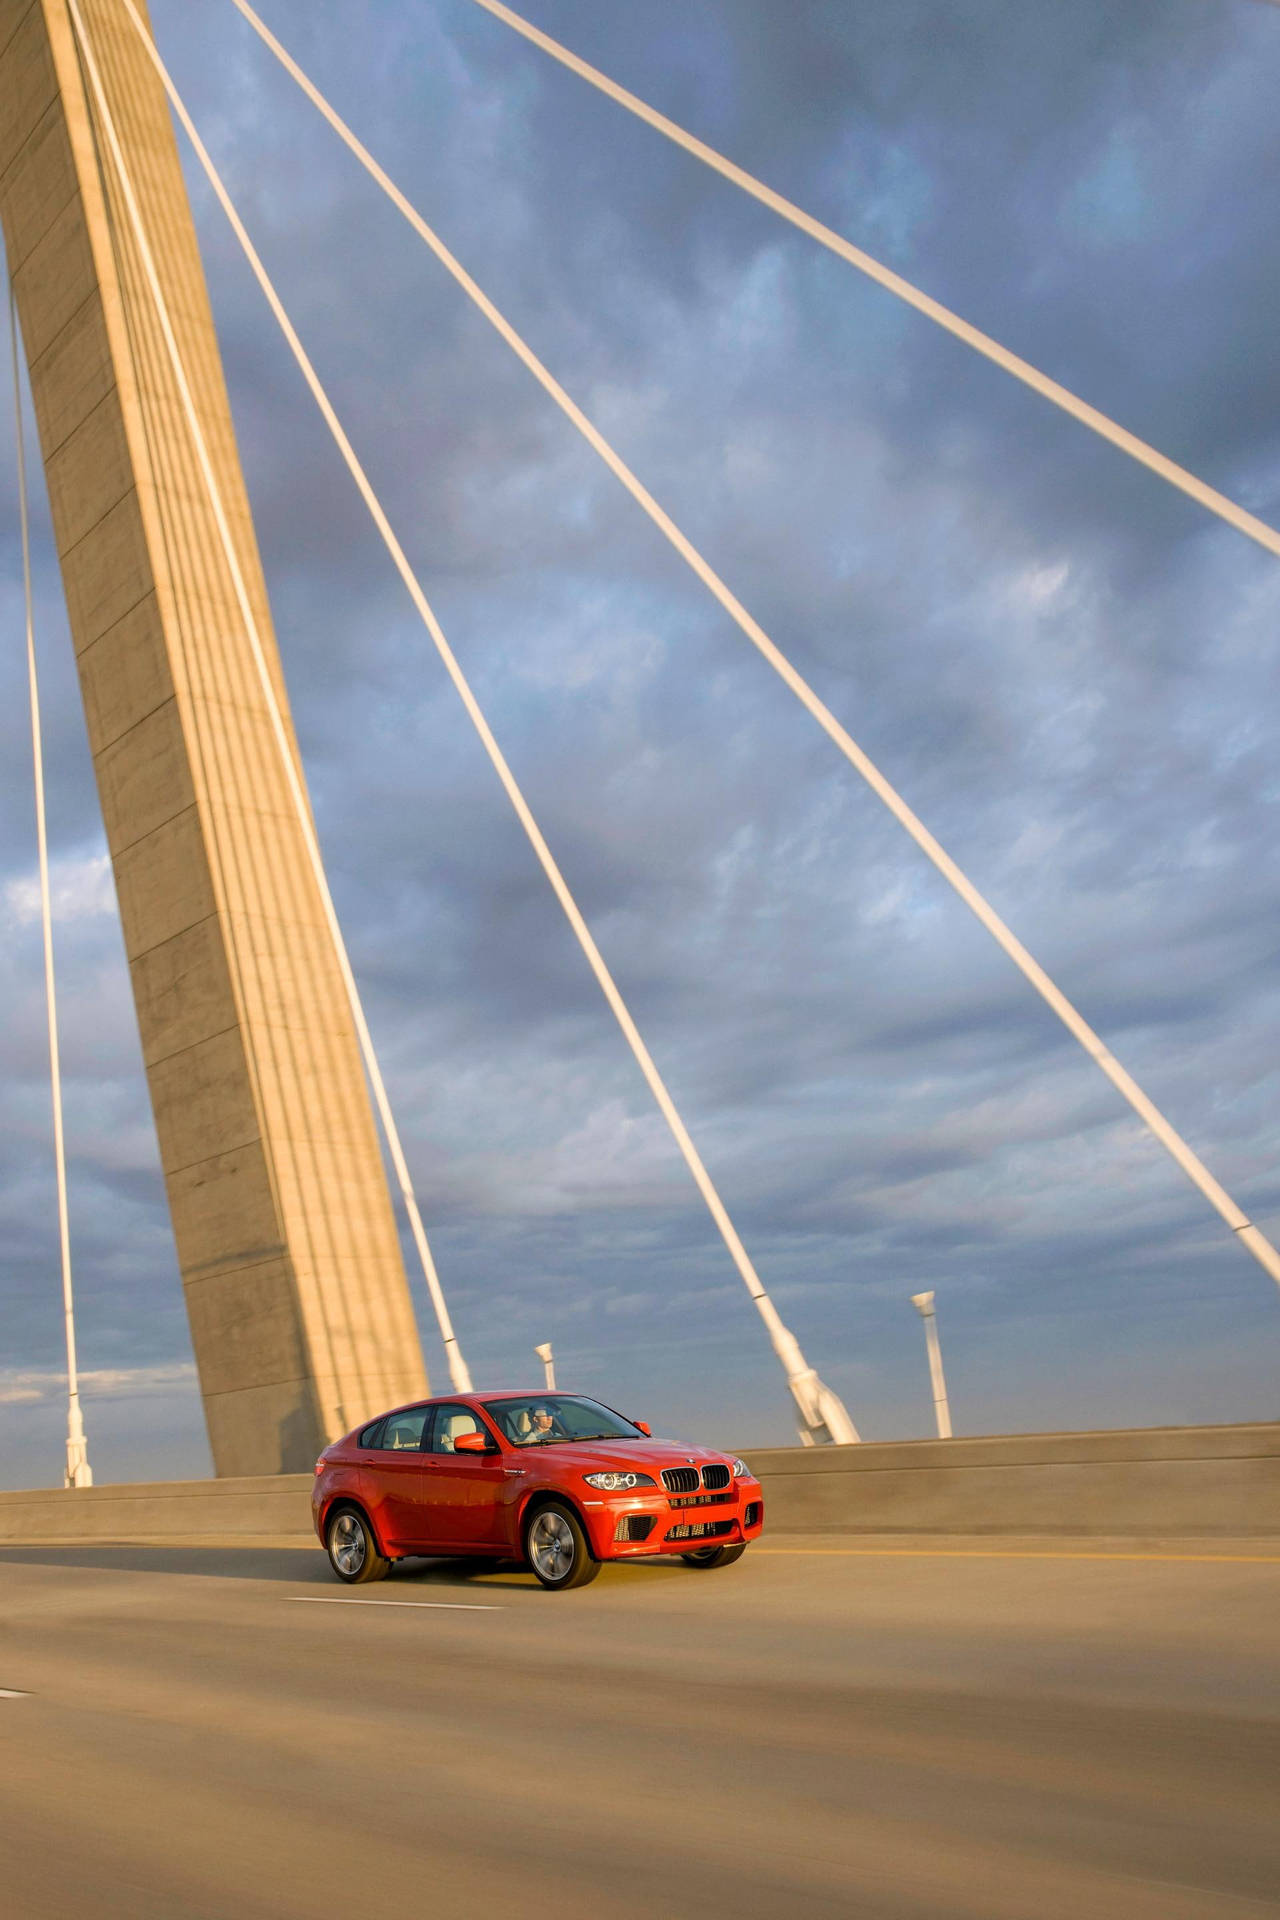 BMW X6 M On A Road Bridge Wallpaper